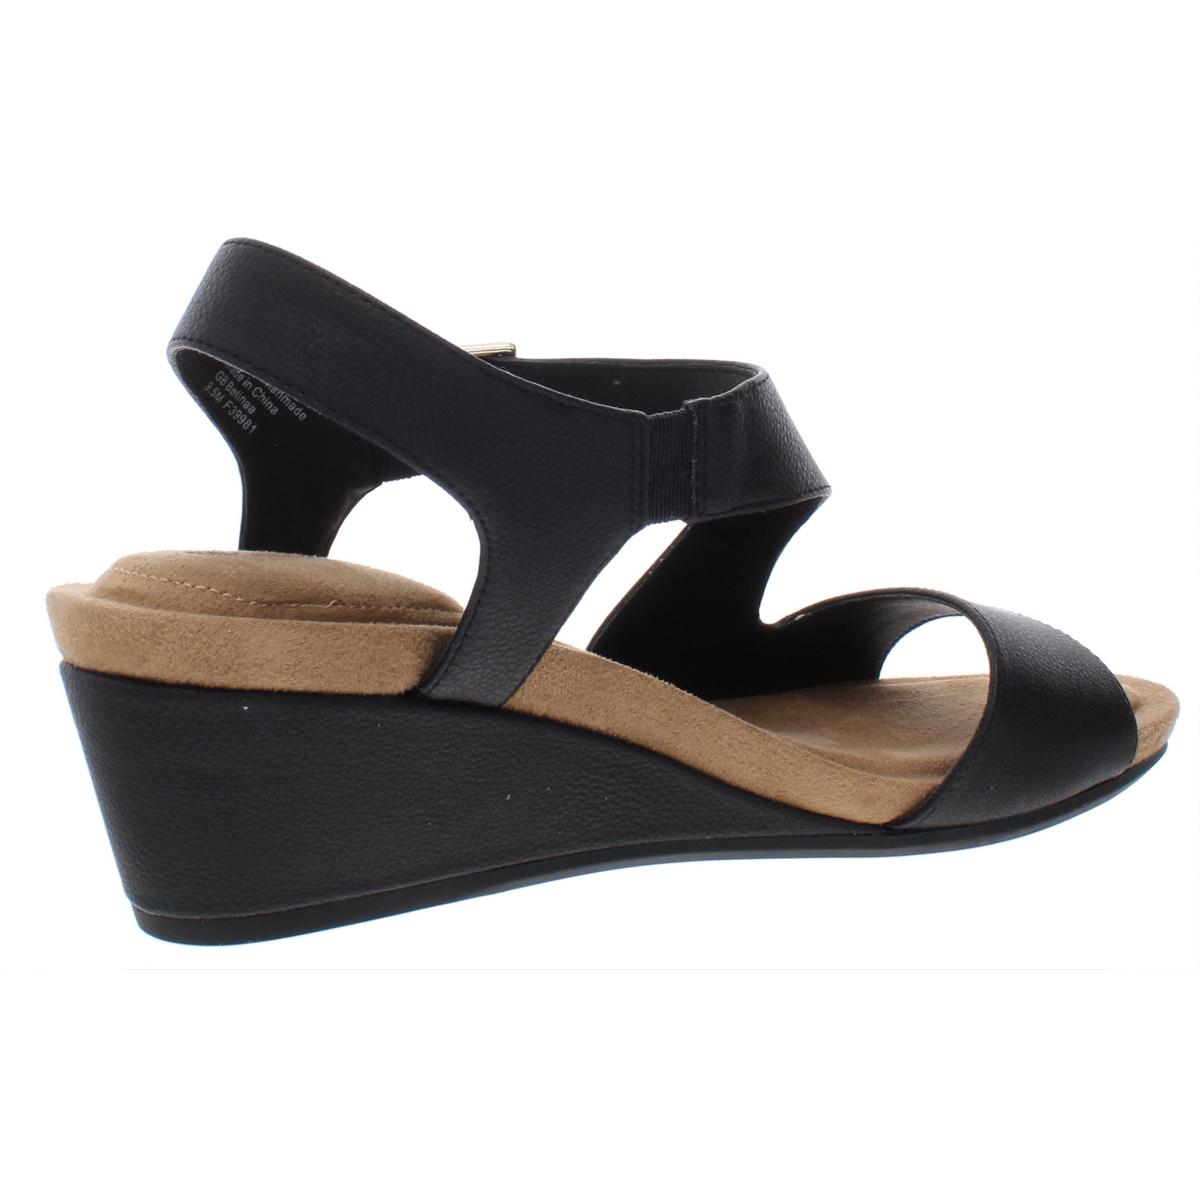 Giani Bernini Womens Belinaa Slingback Memory Foam Wedge Sandals Shoes ...